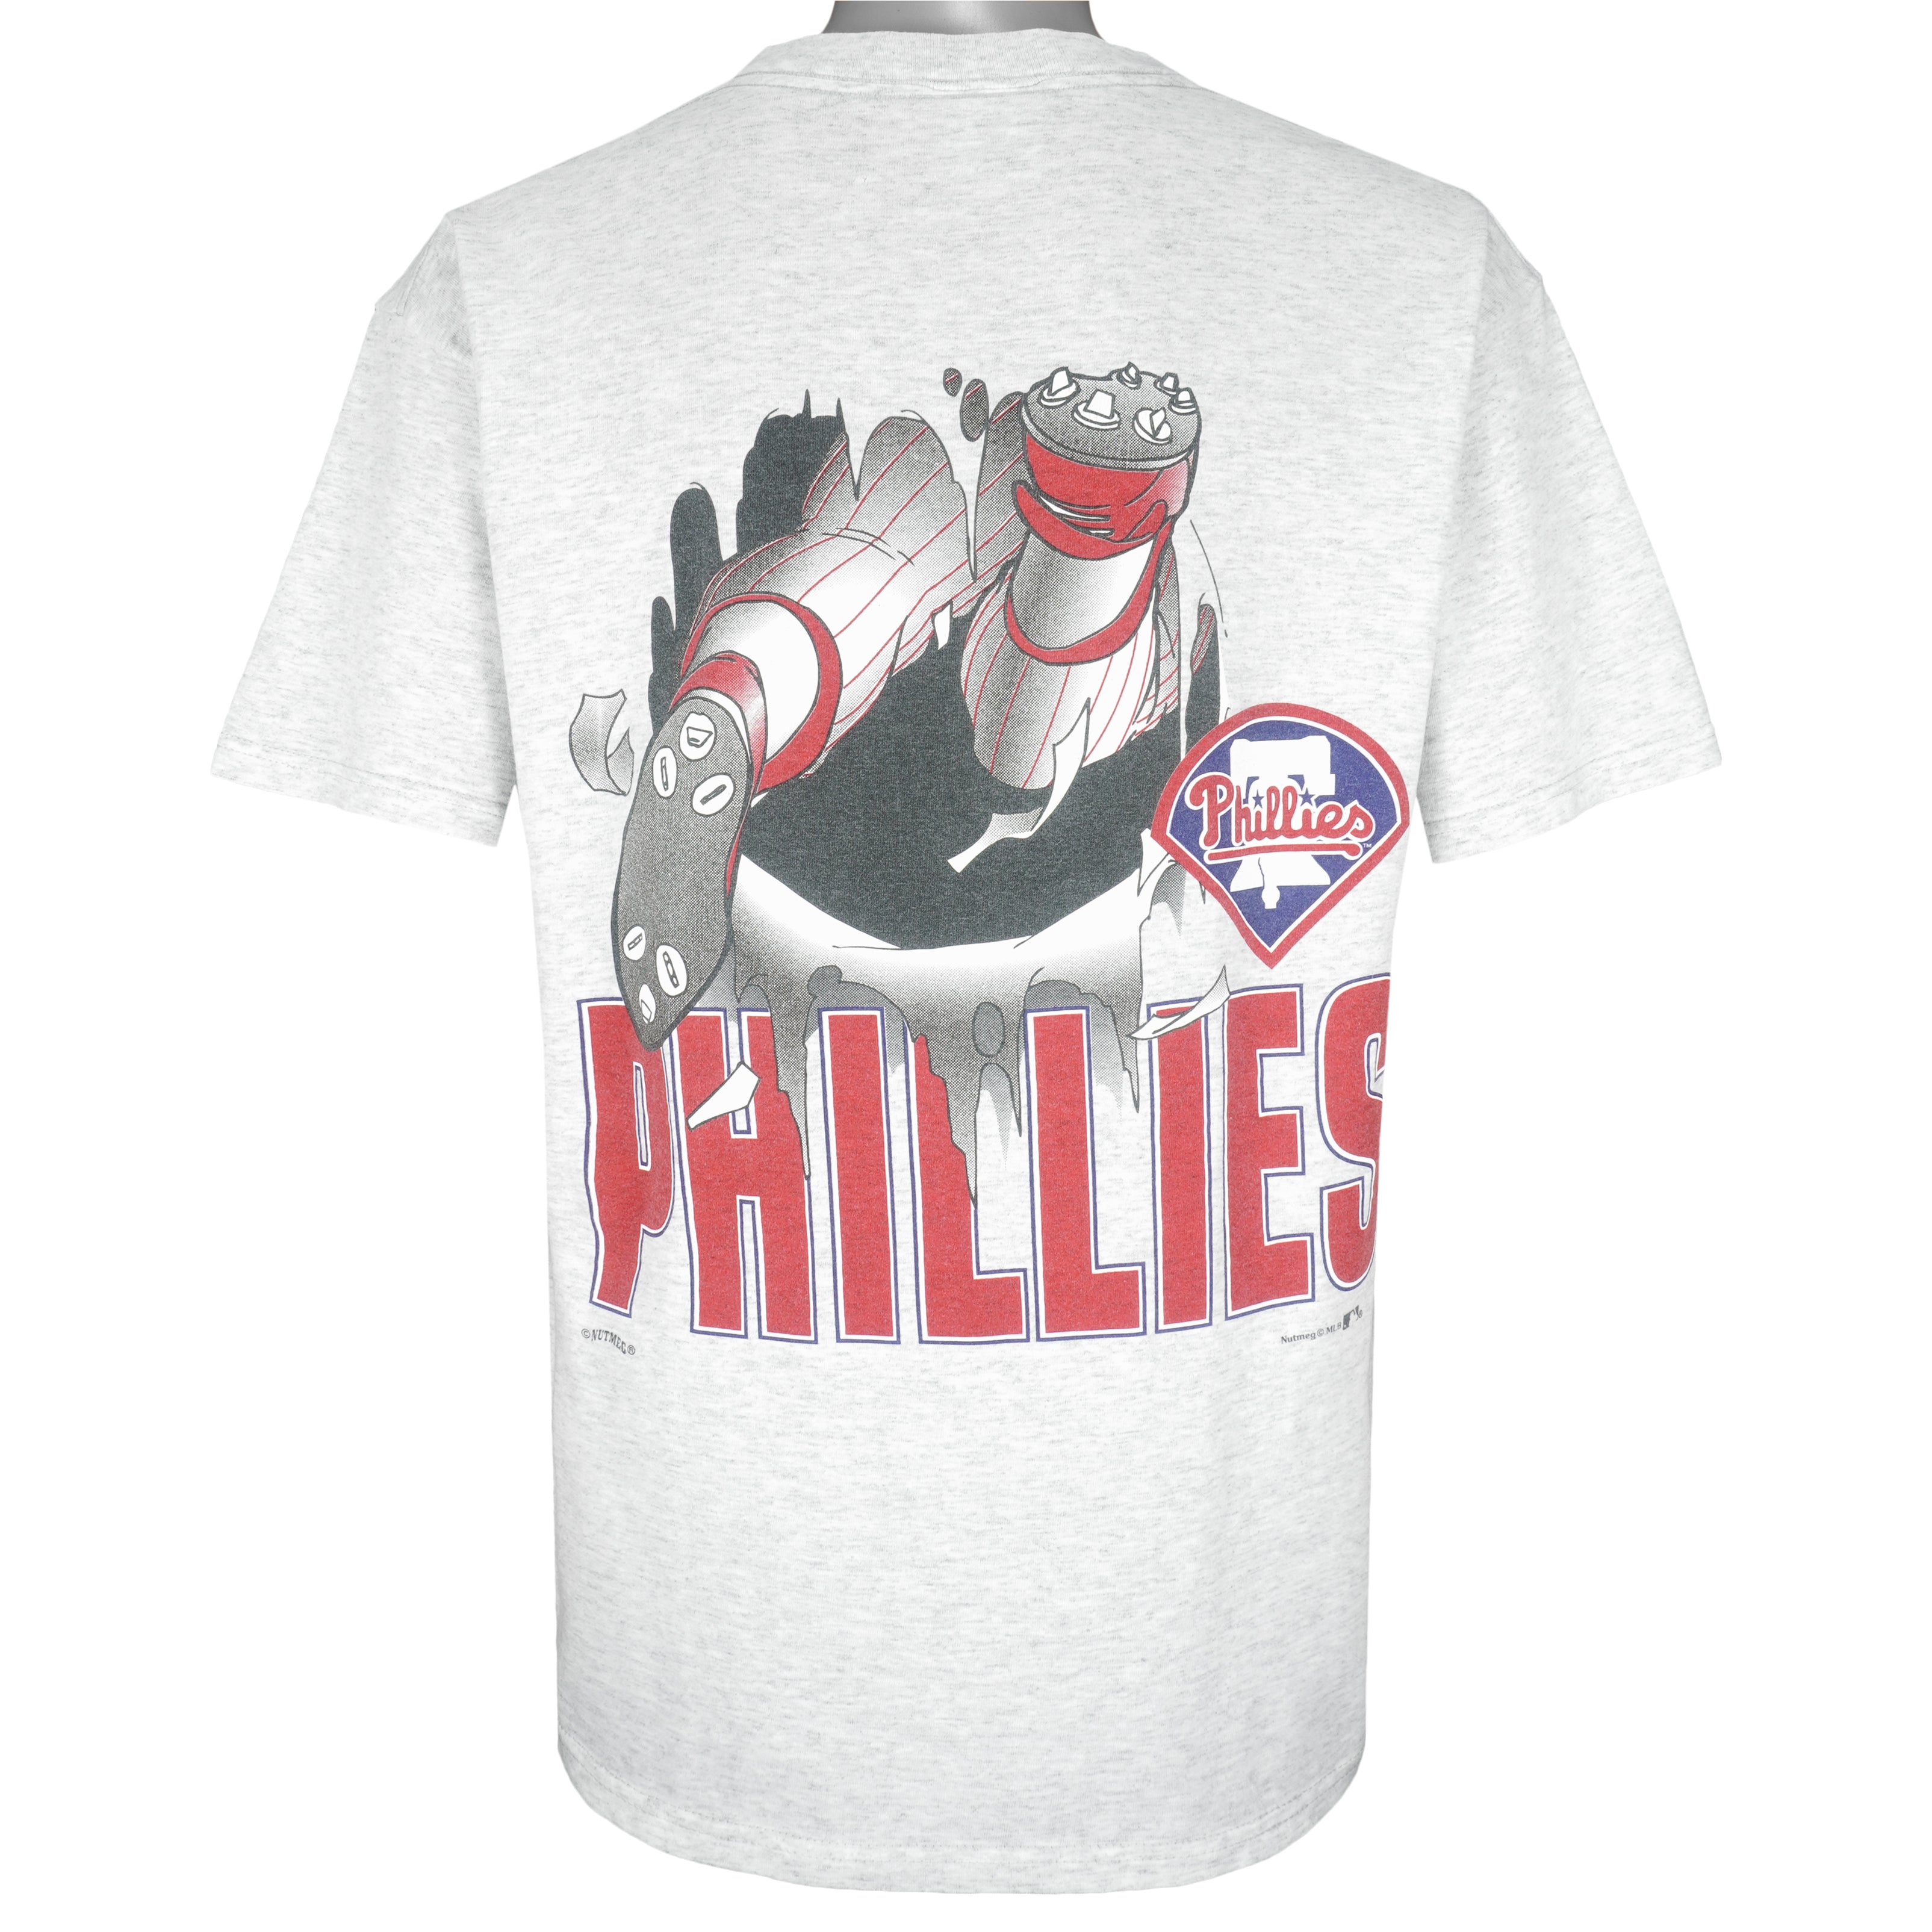 MLB Philadelphia Phillies T-Shirts Tops, Clothing